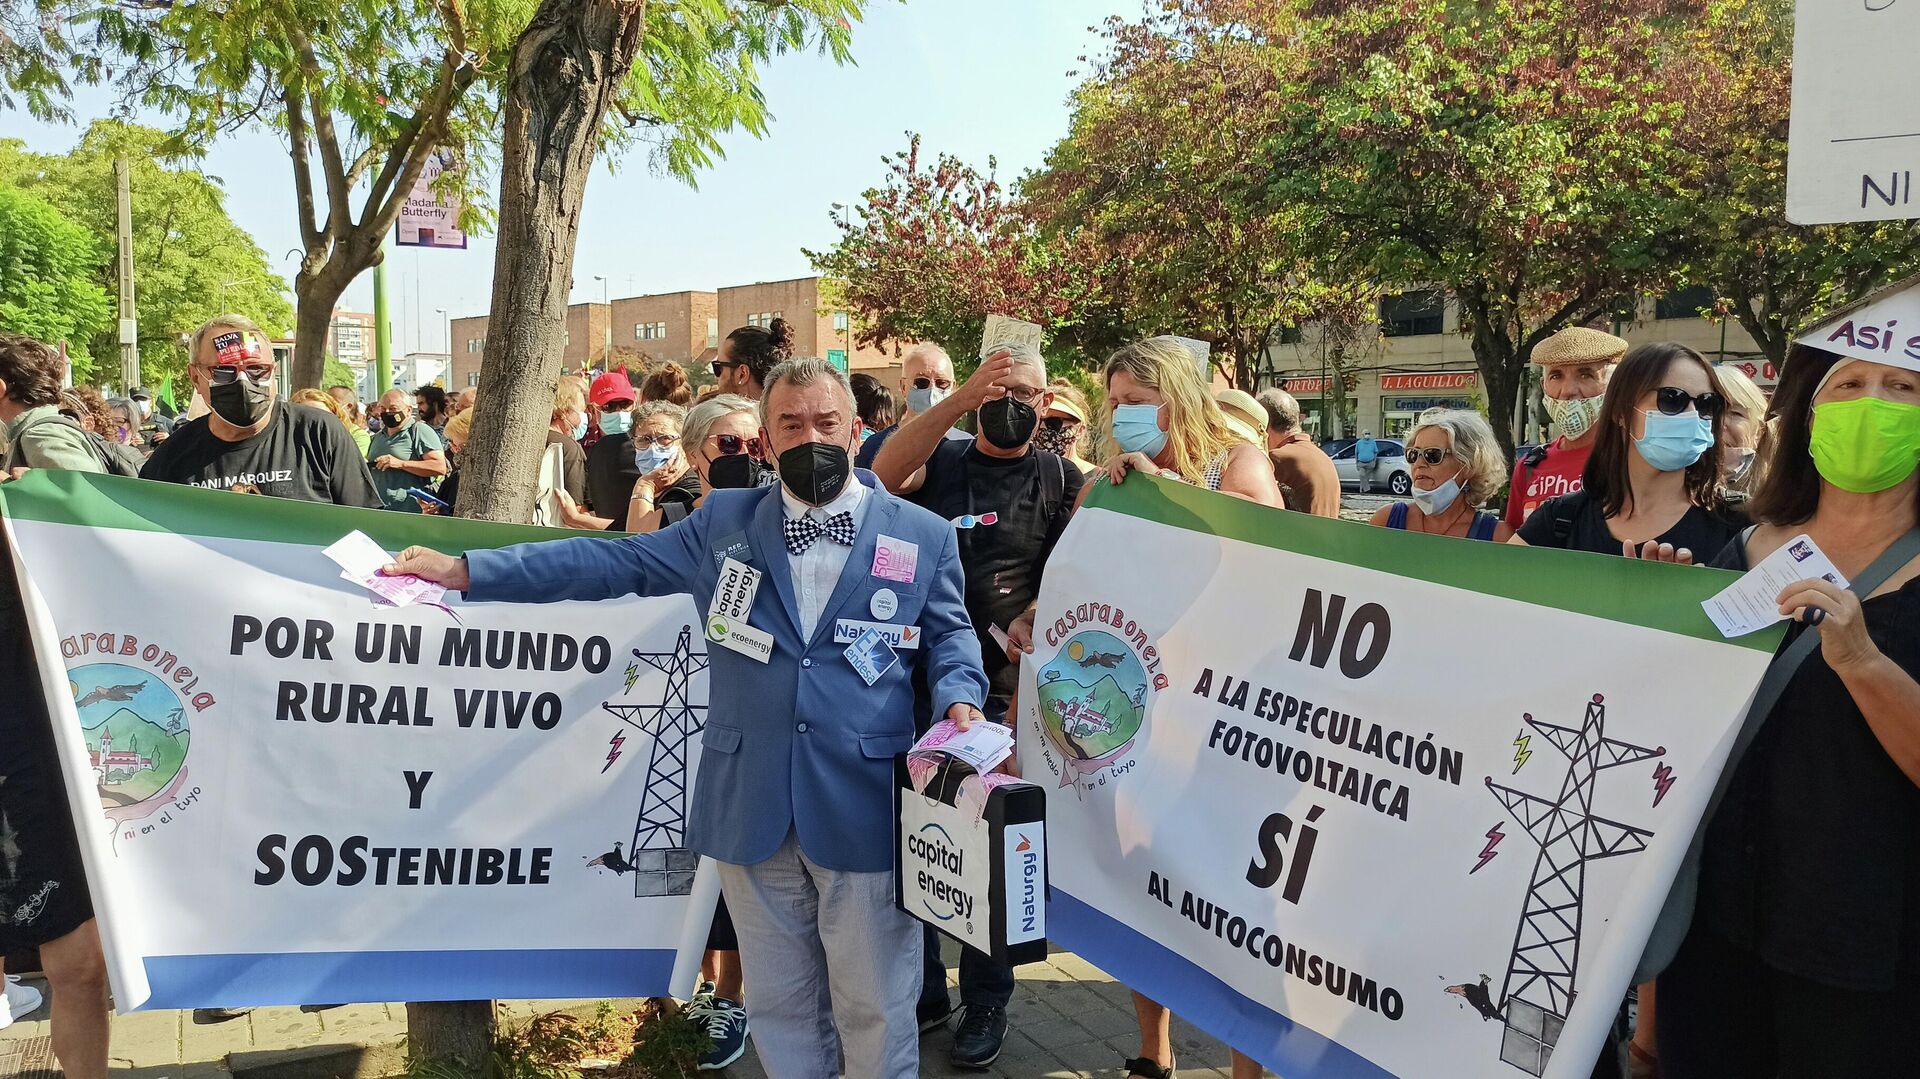 Las protestas contra el ecopostureo del 'boom solar' en Andalucía - Sputnik Mundo, 1920, 30.09.2021